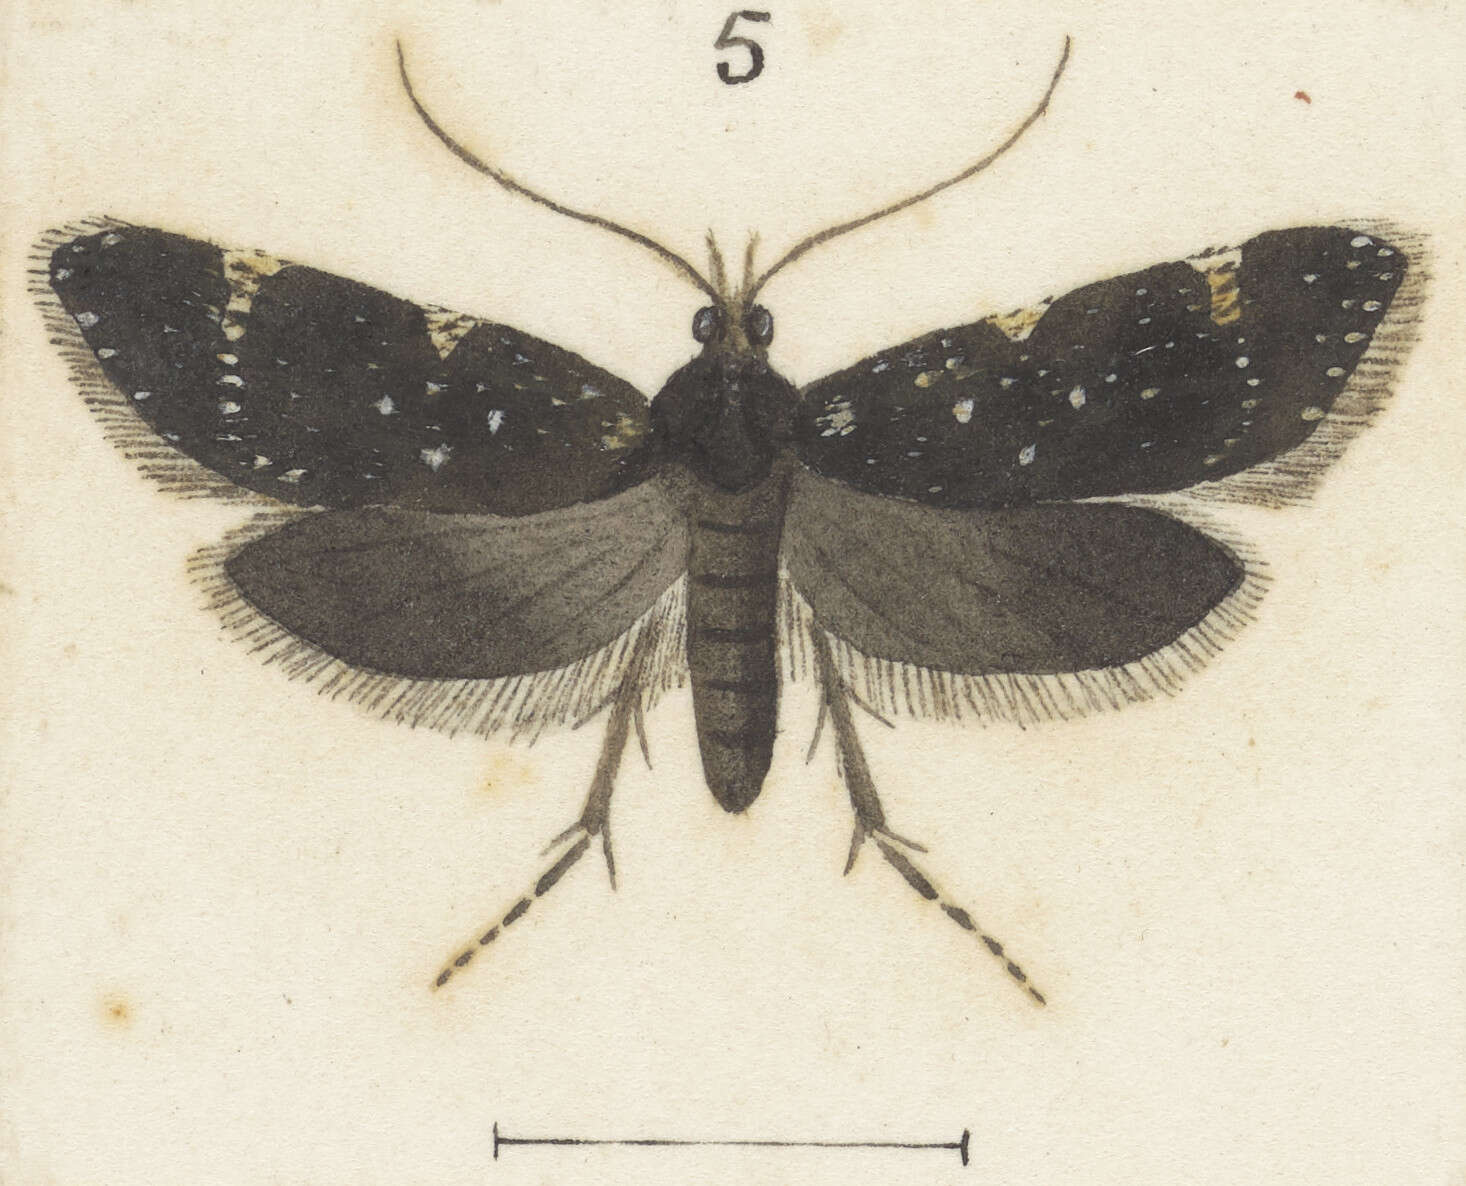 Image of Lathicrossa leucocentra Meyrick 1884